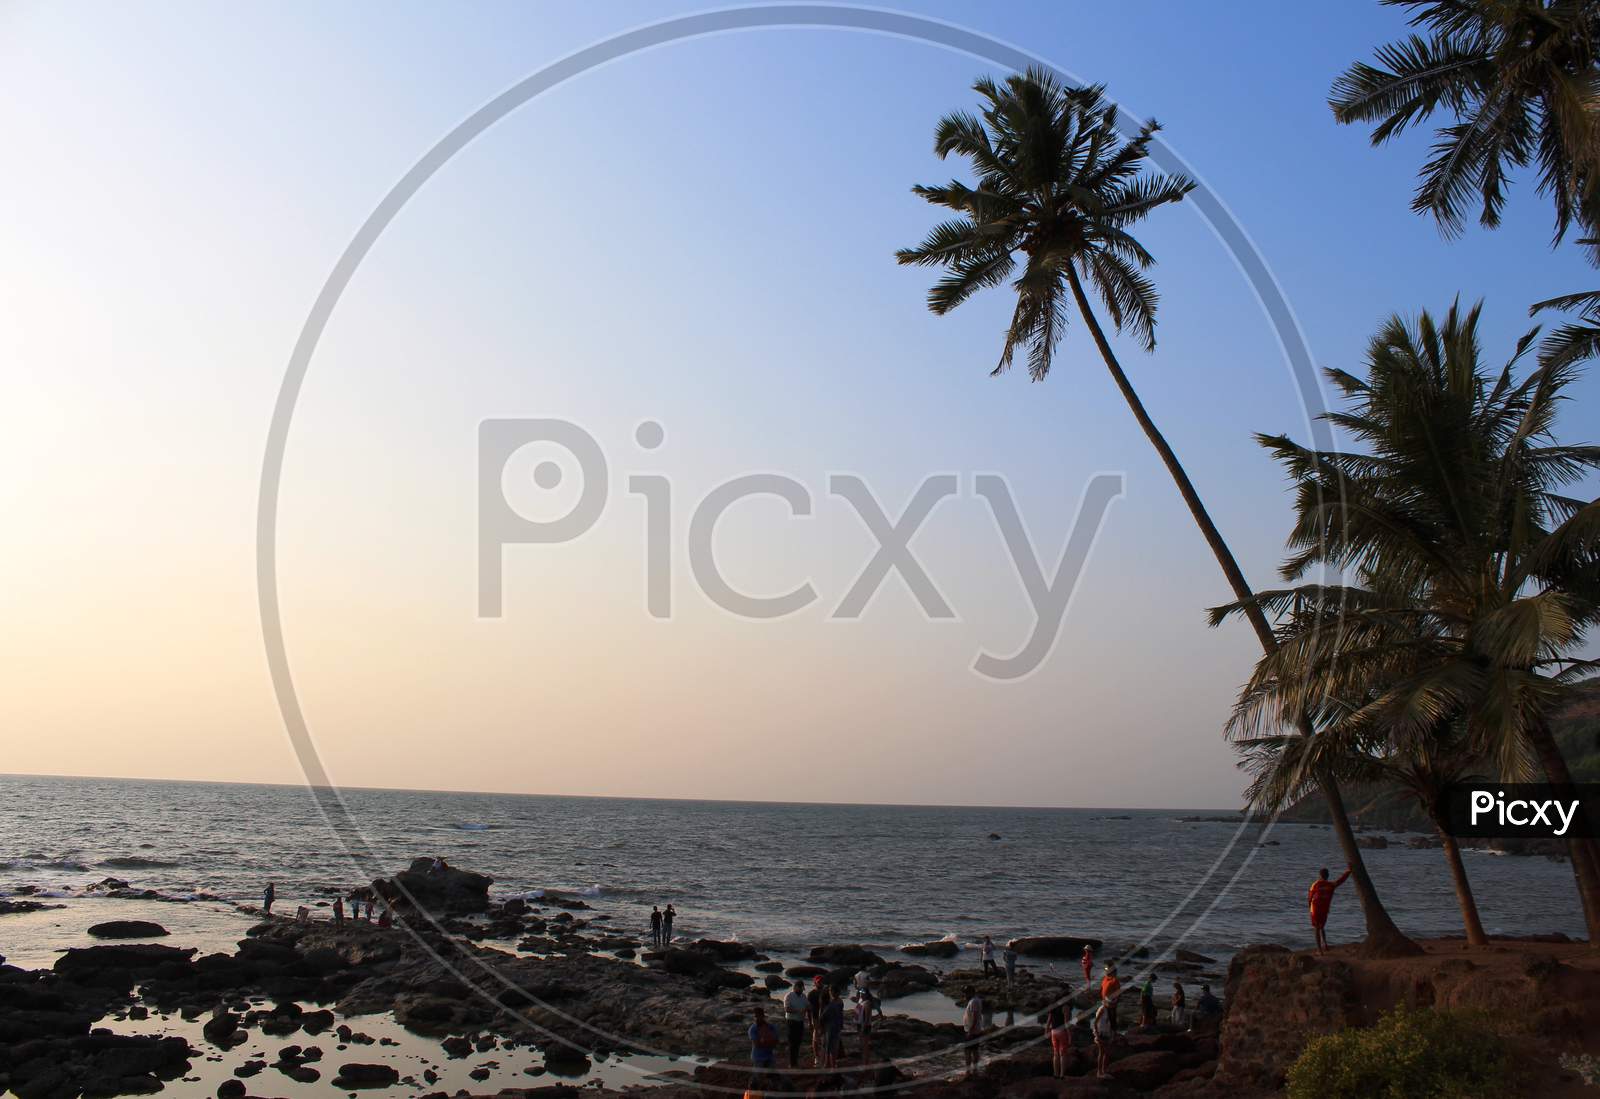 a view of Anjuna Beach, Goa